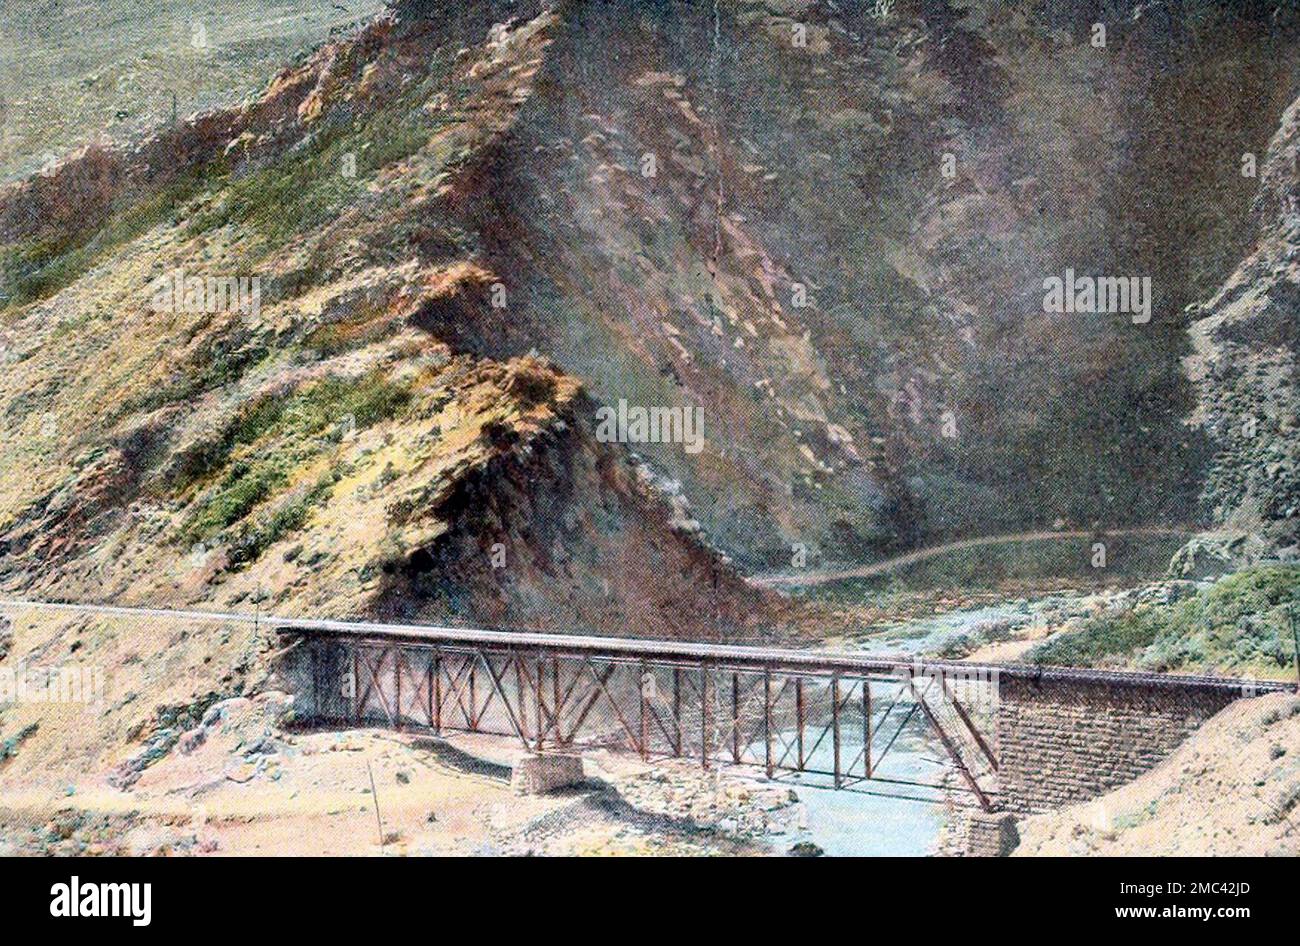 Devil's Gate, à Weber Canyon, Utah, sur le chemin de fer Union Pacific, vers 1900 Banque D'Images